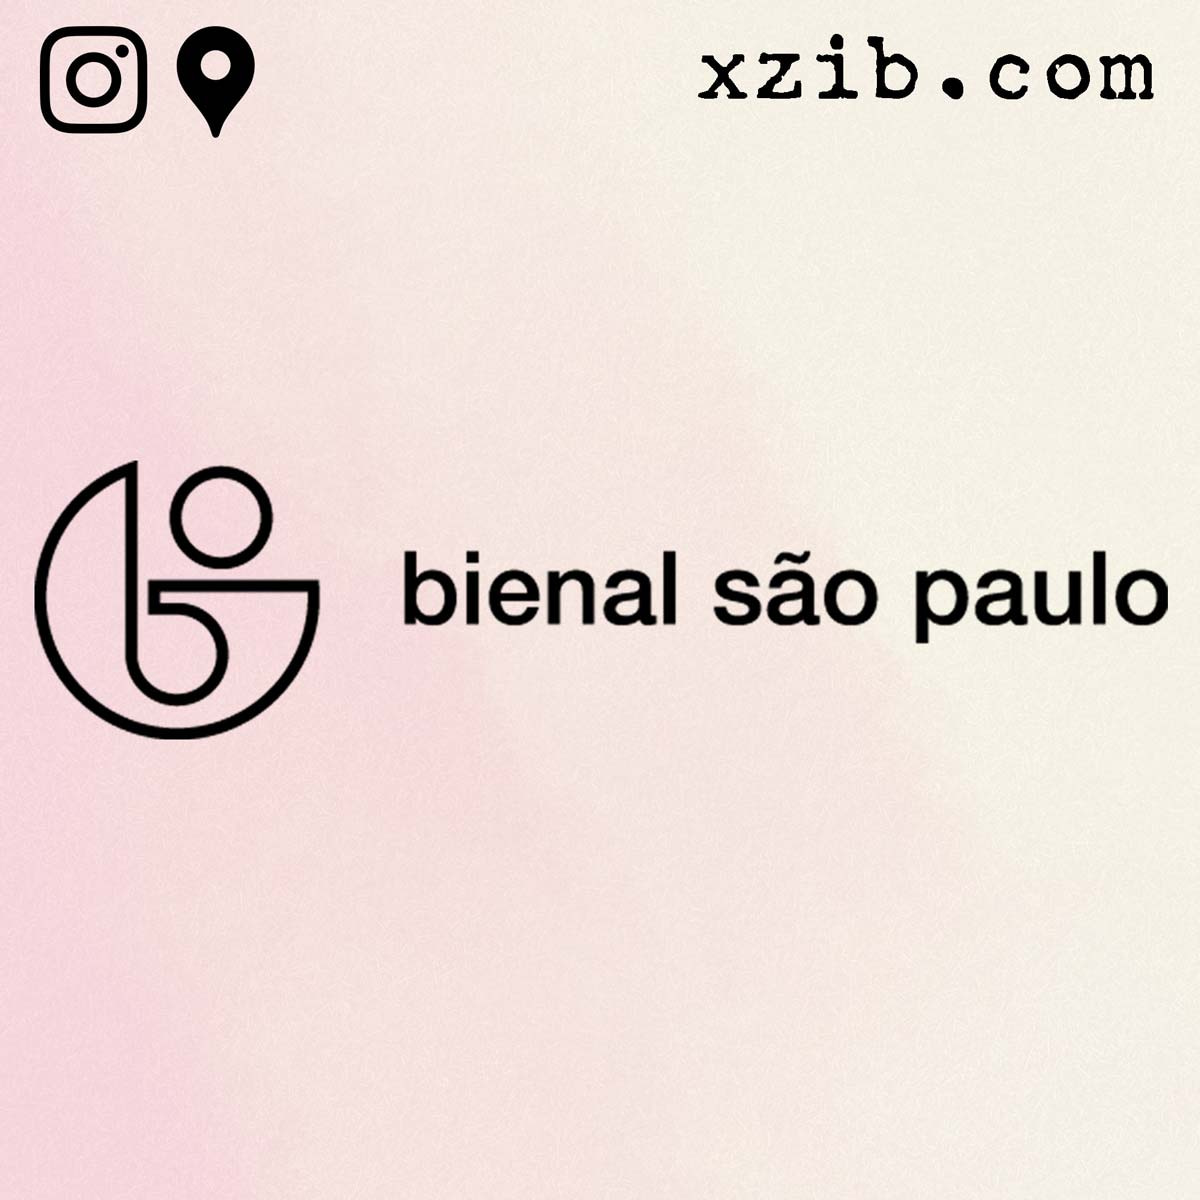 Bienal Sao Paulo